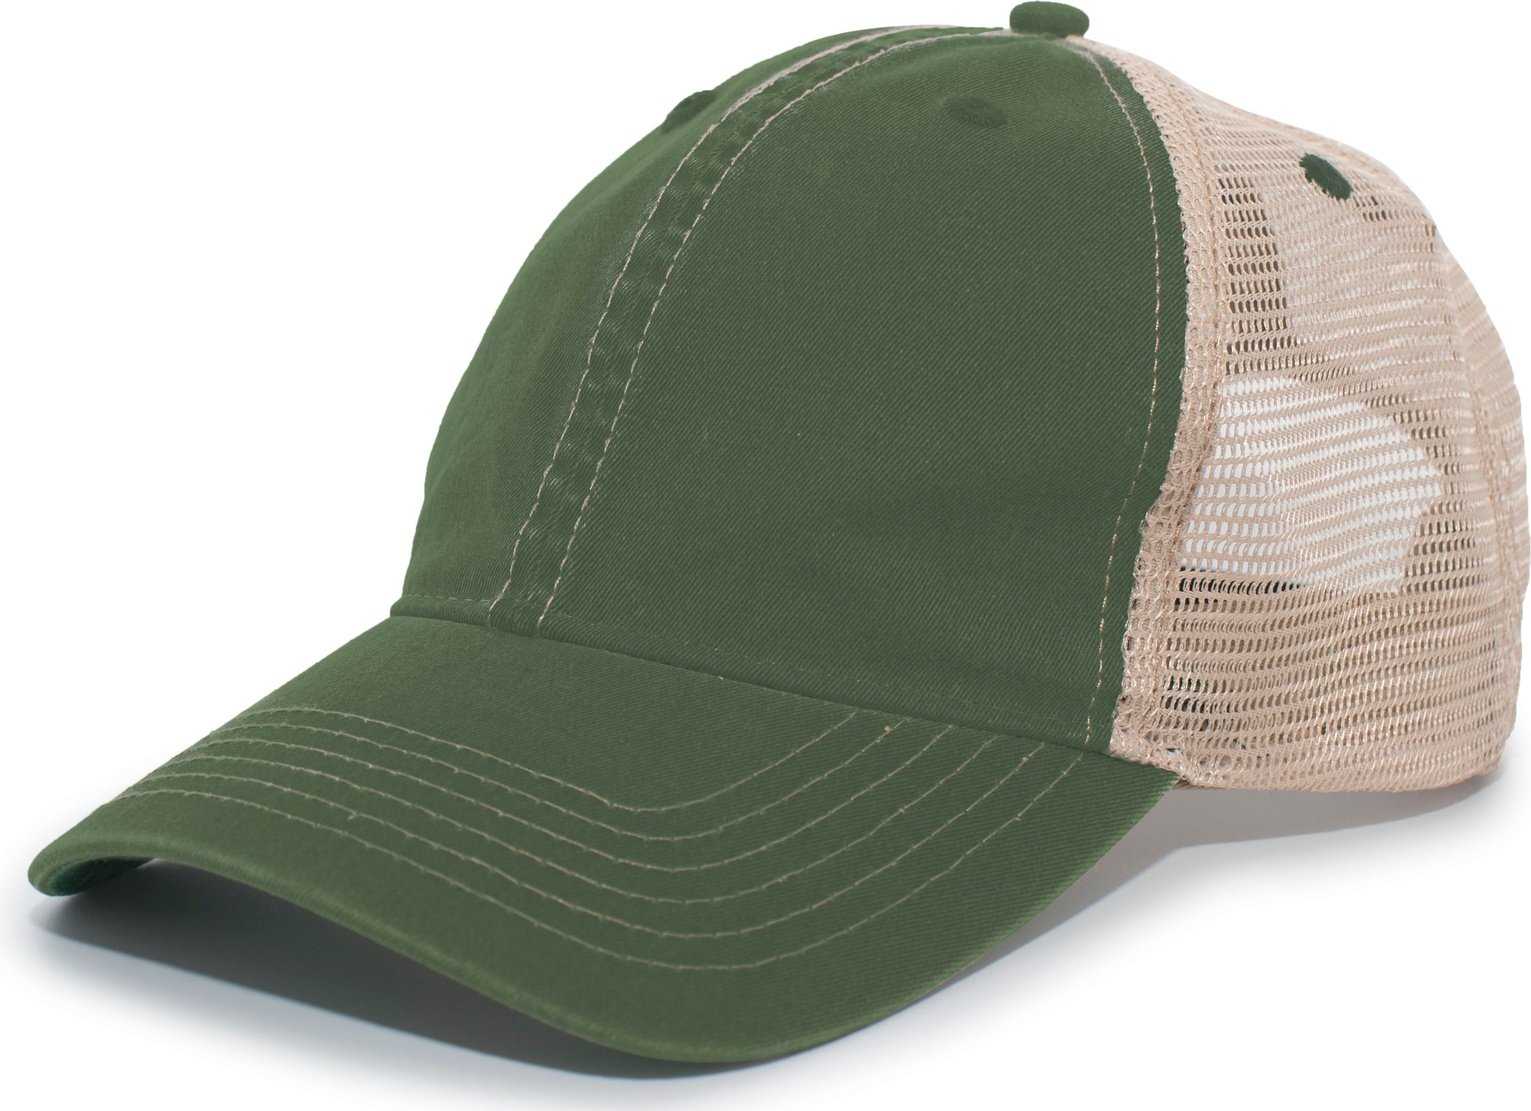 Pacific Headwear V37 Broken-In Trucker Mesh Snapback Cap - Dark Green Tan - HIT a Double